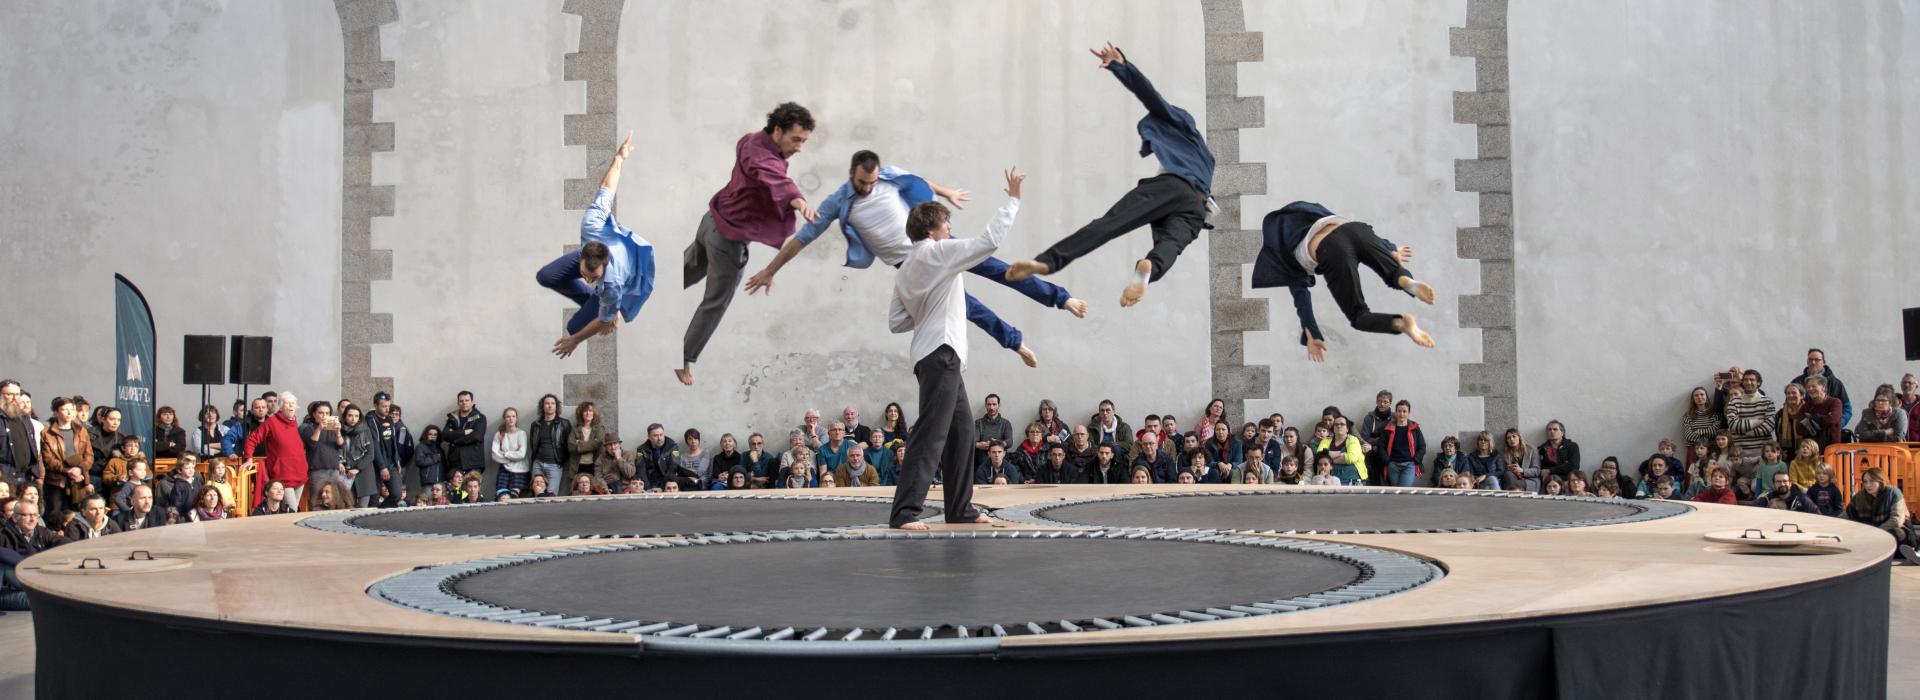 sur une structure avec des trampolines, six danseurs sont en vol